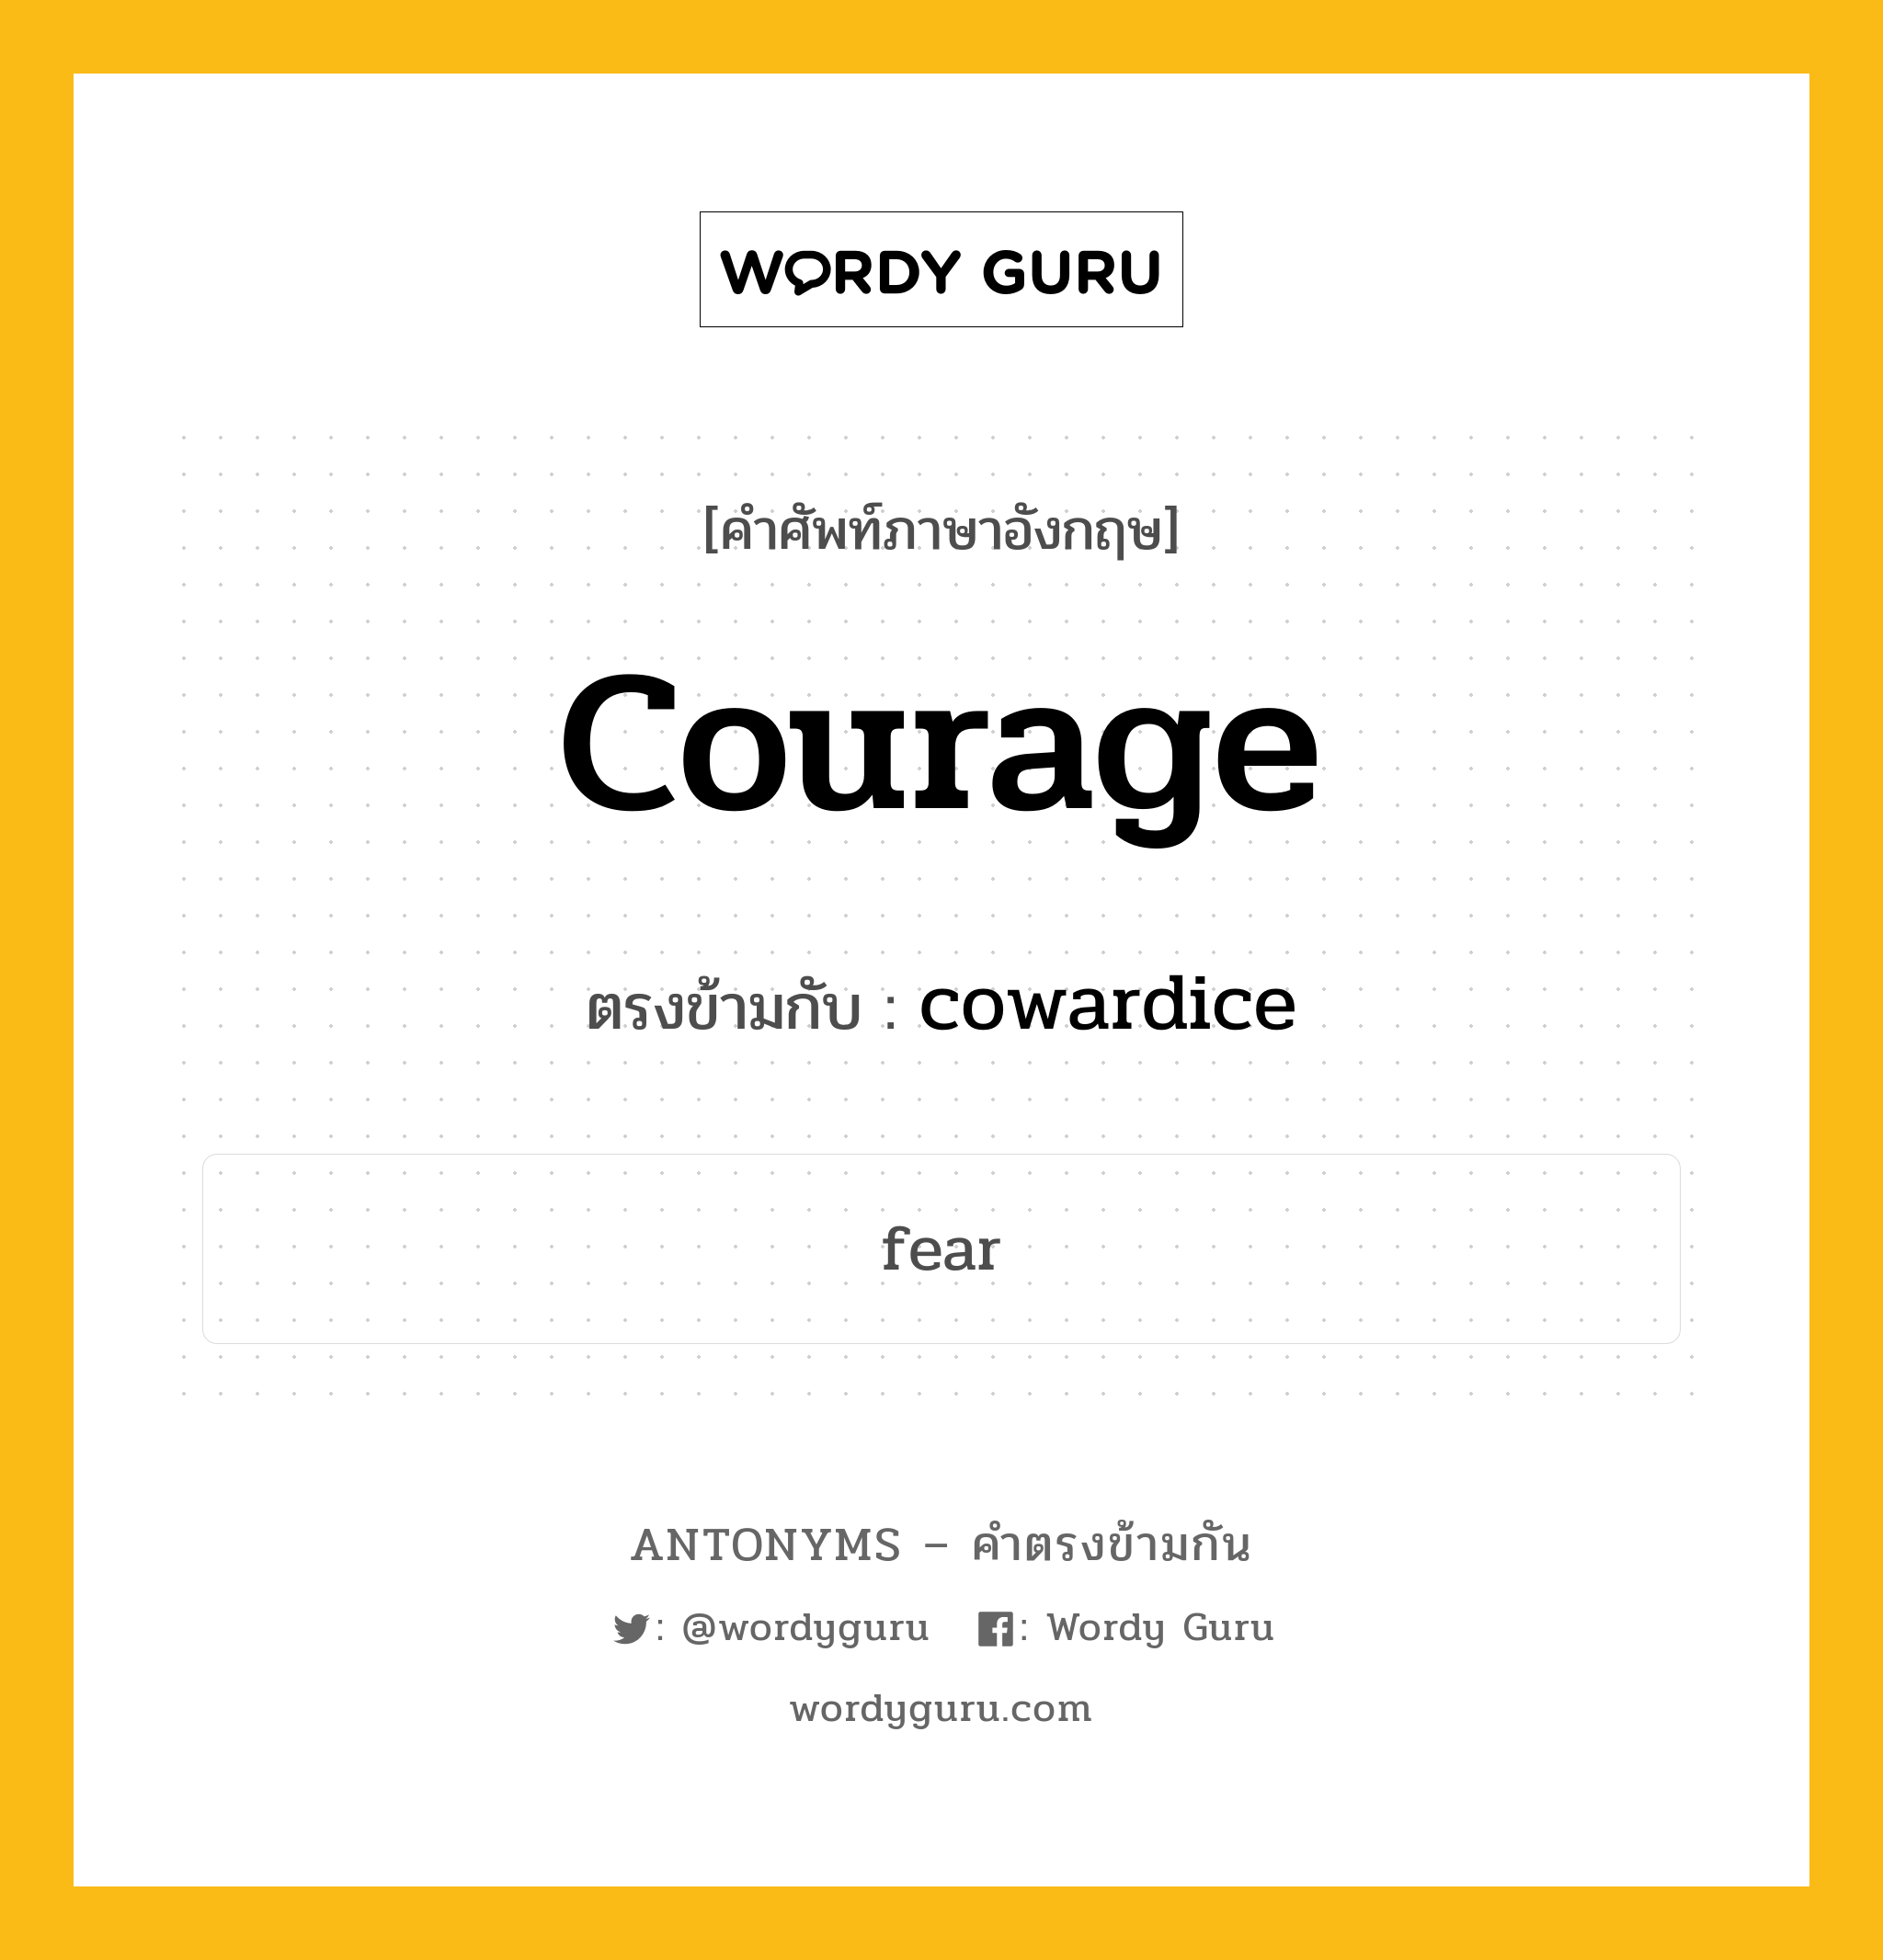 courage เป็นคำตรงข้ามกับคำไหนบ้าง?, คำศัพท์ภาษาอังกฤษ courage ตรงข้ามกับ cowardice หมวด cowardice